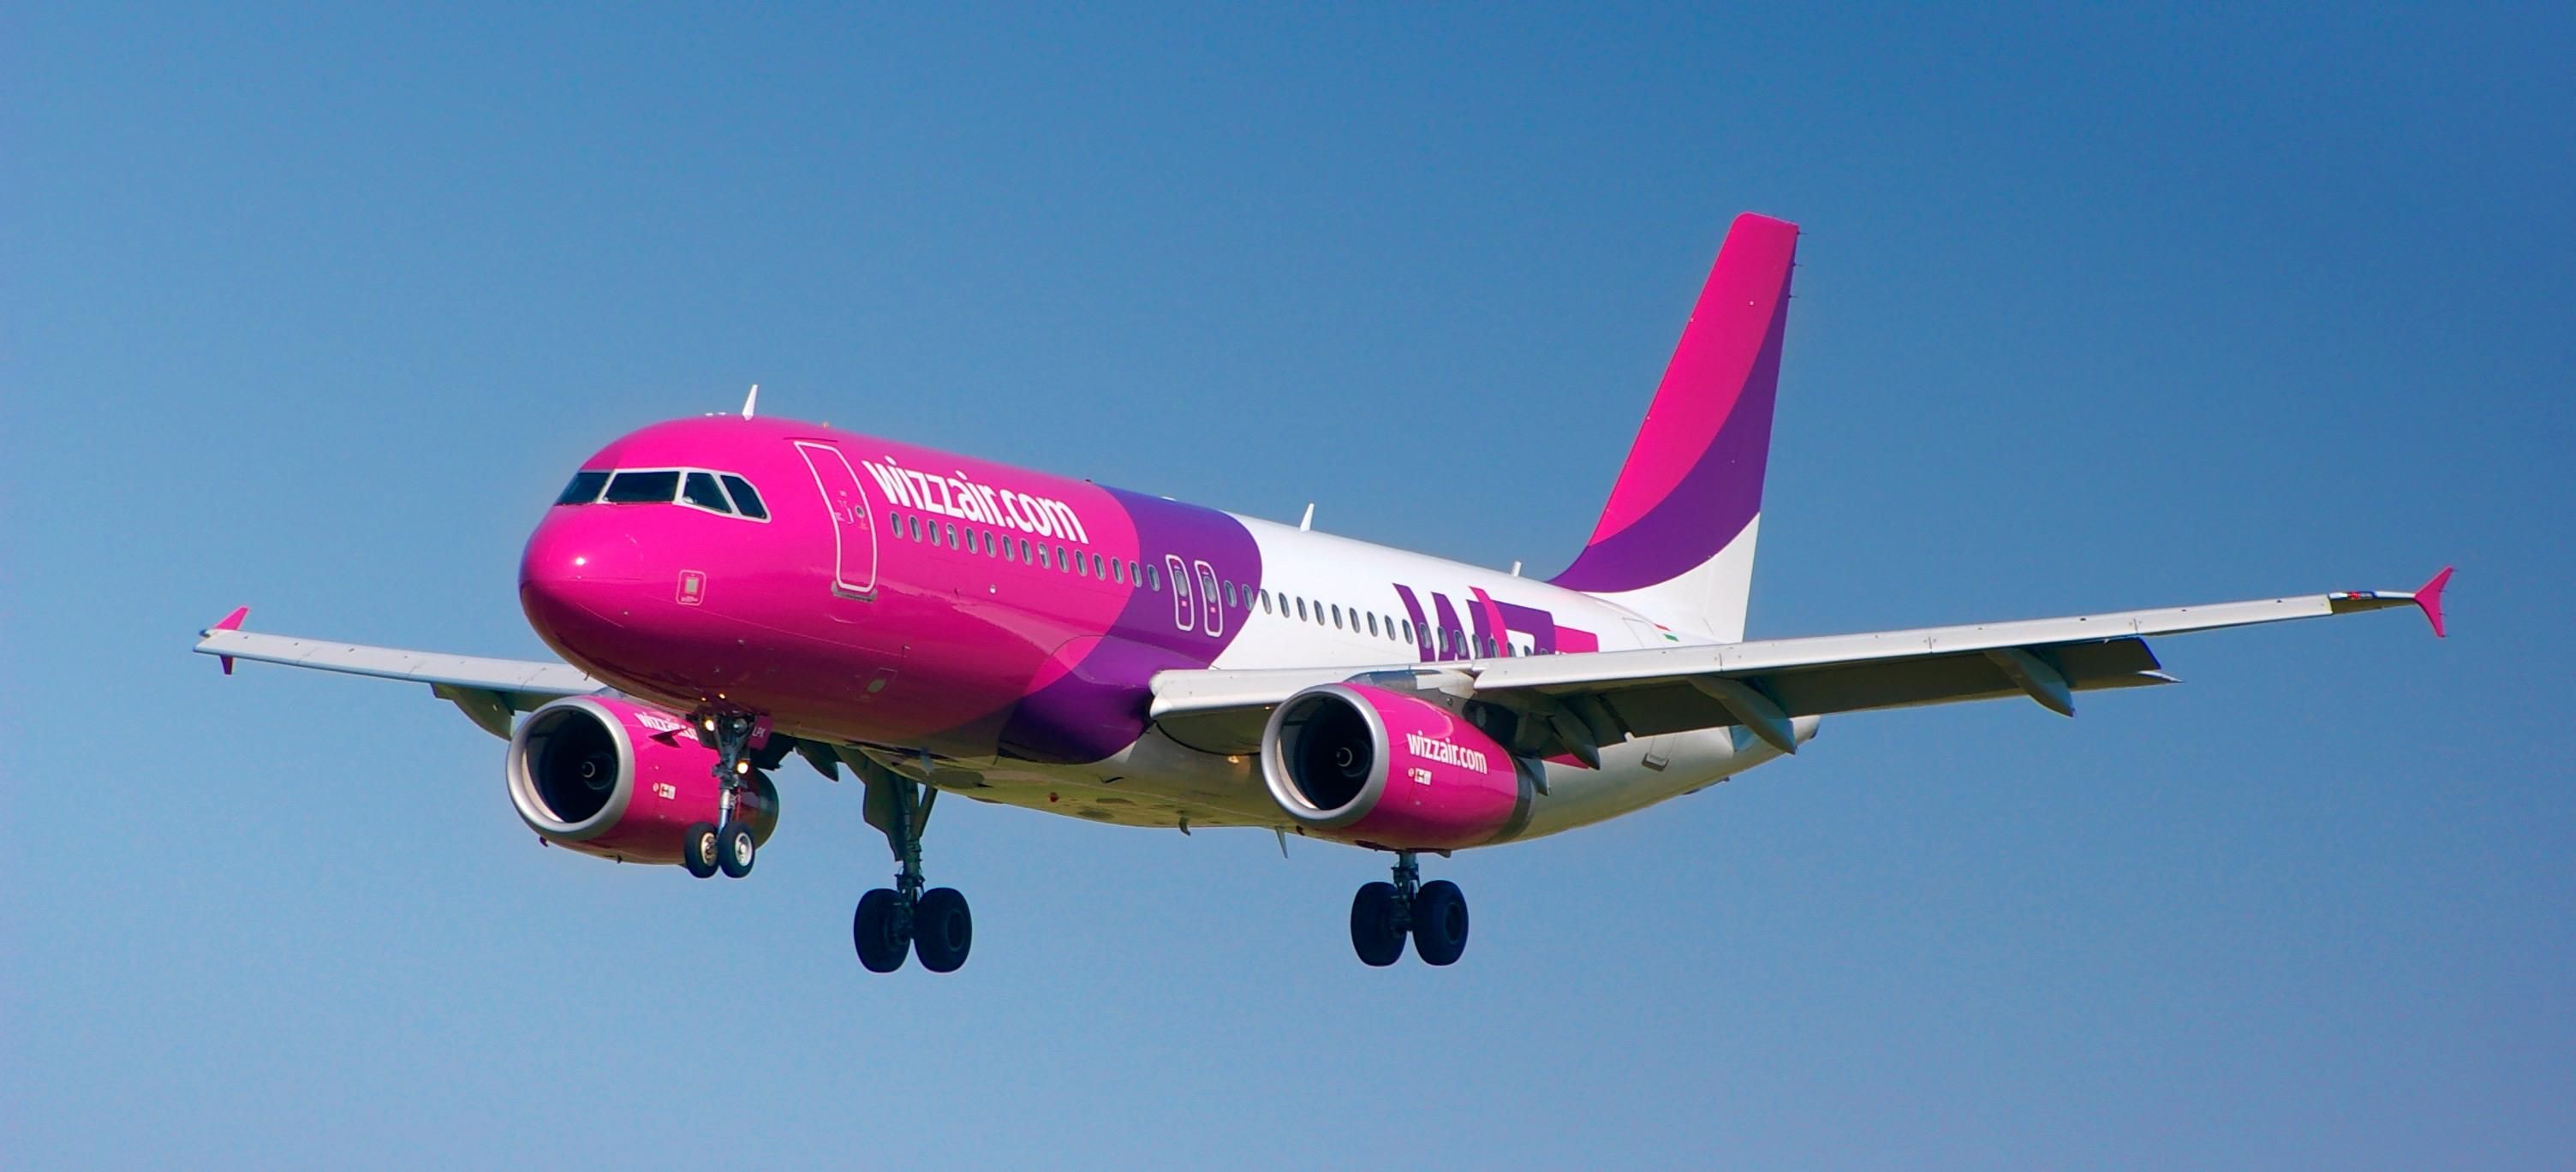 Wizz Air влаштовує великий розпродаж авіаквитків: подробиці